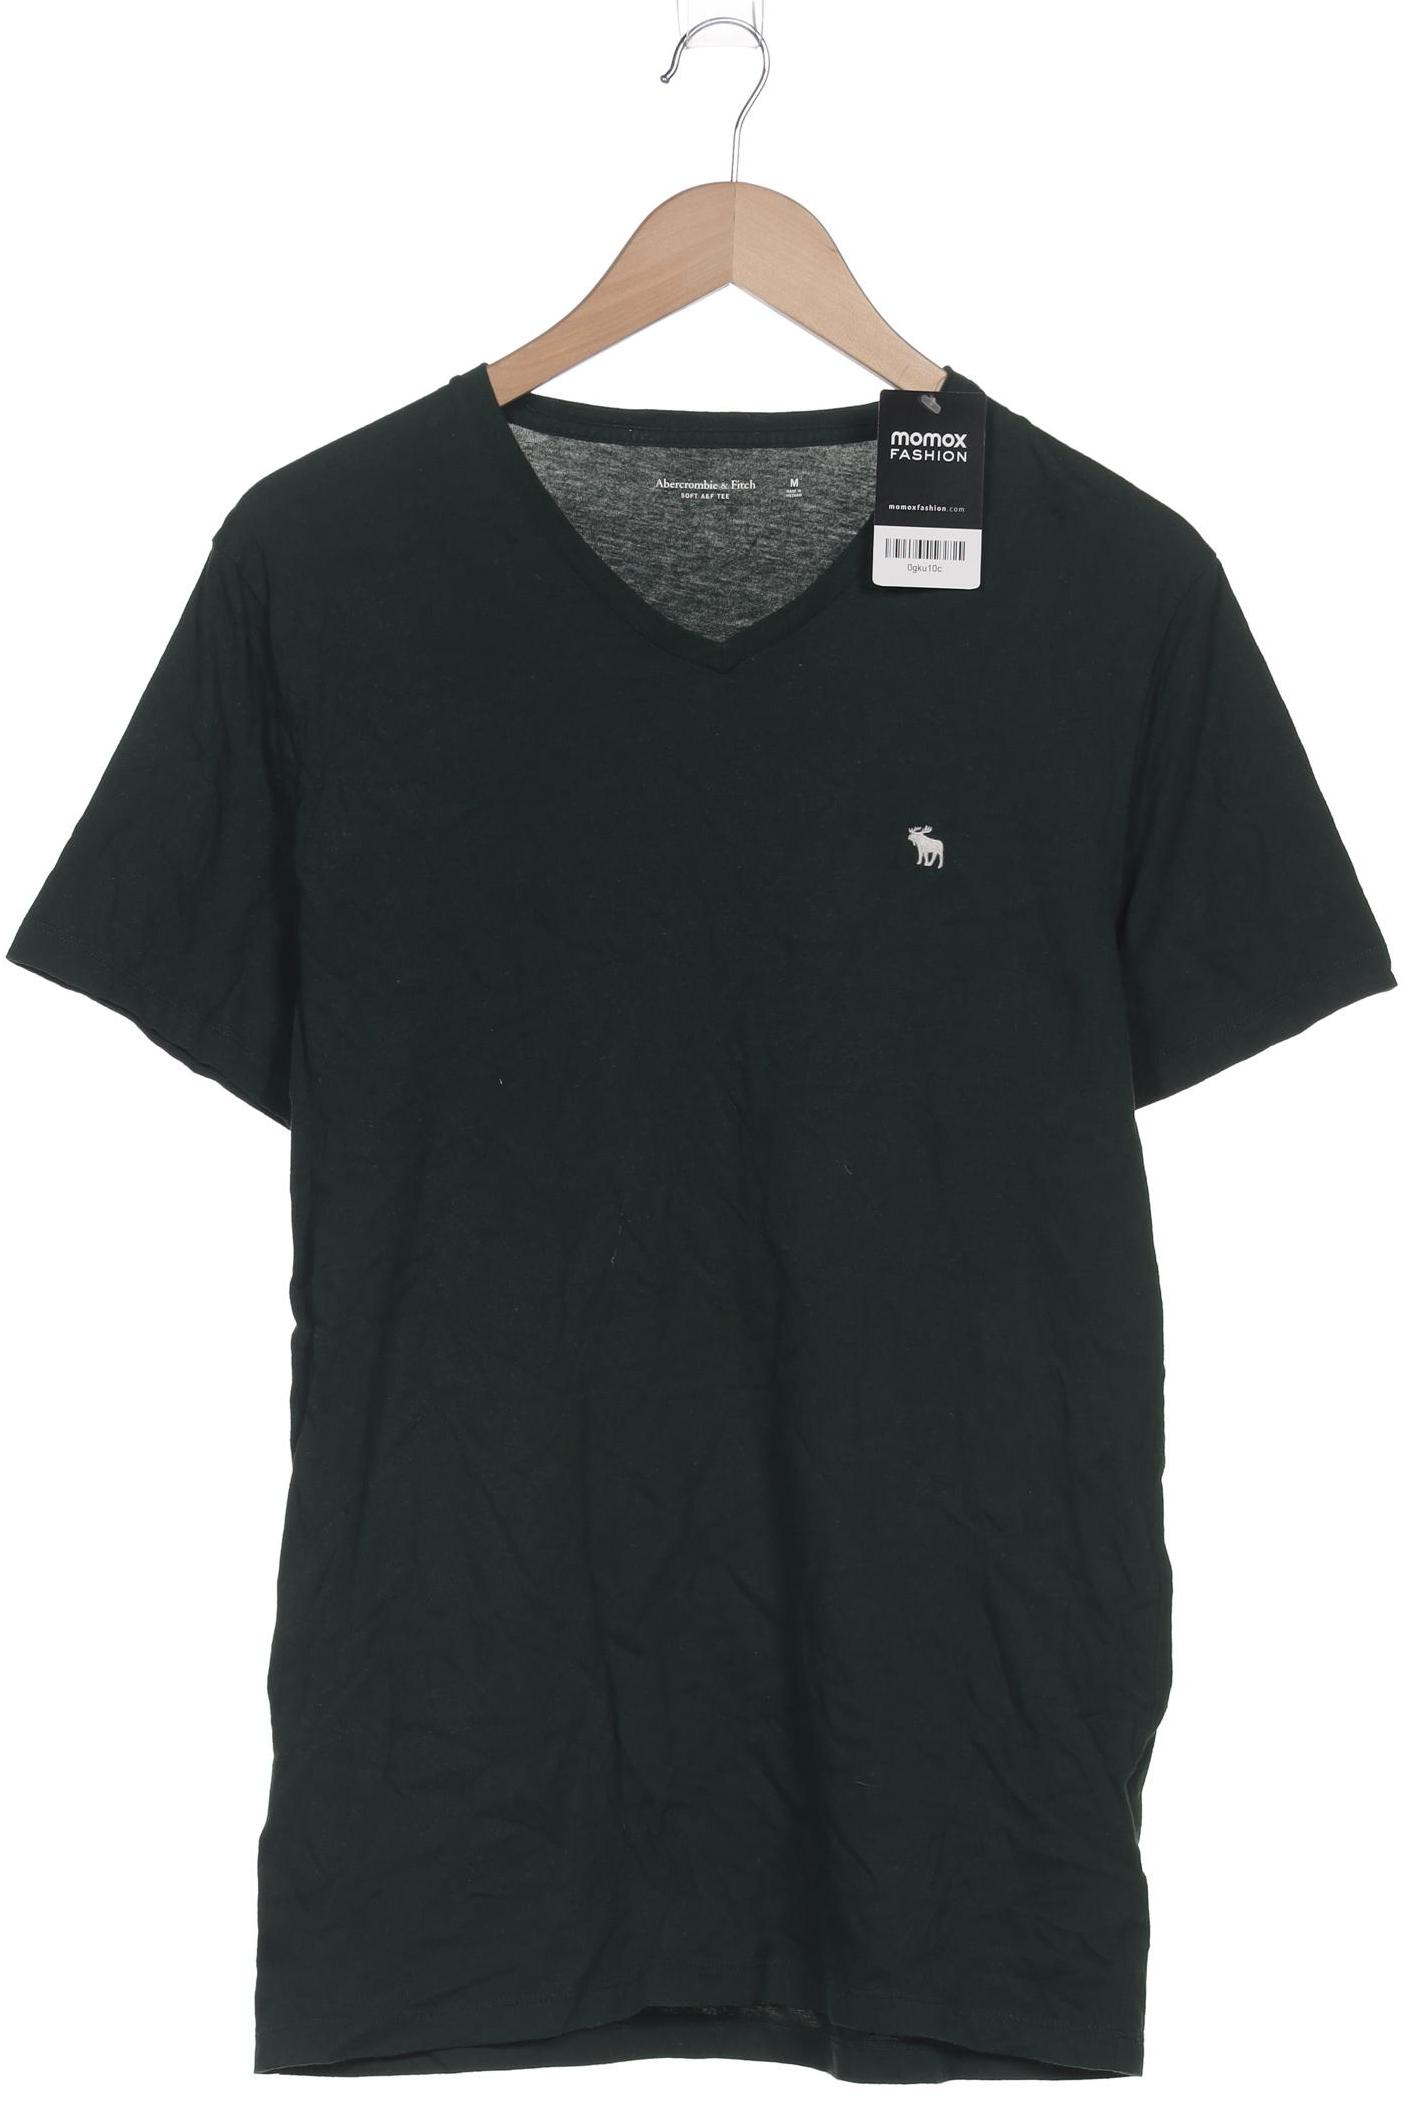 Abercrombie & Fitch Herren T-Shirt, grün, Gr. 48 von Abercrombie & Fitch